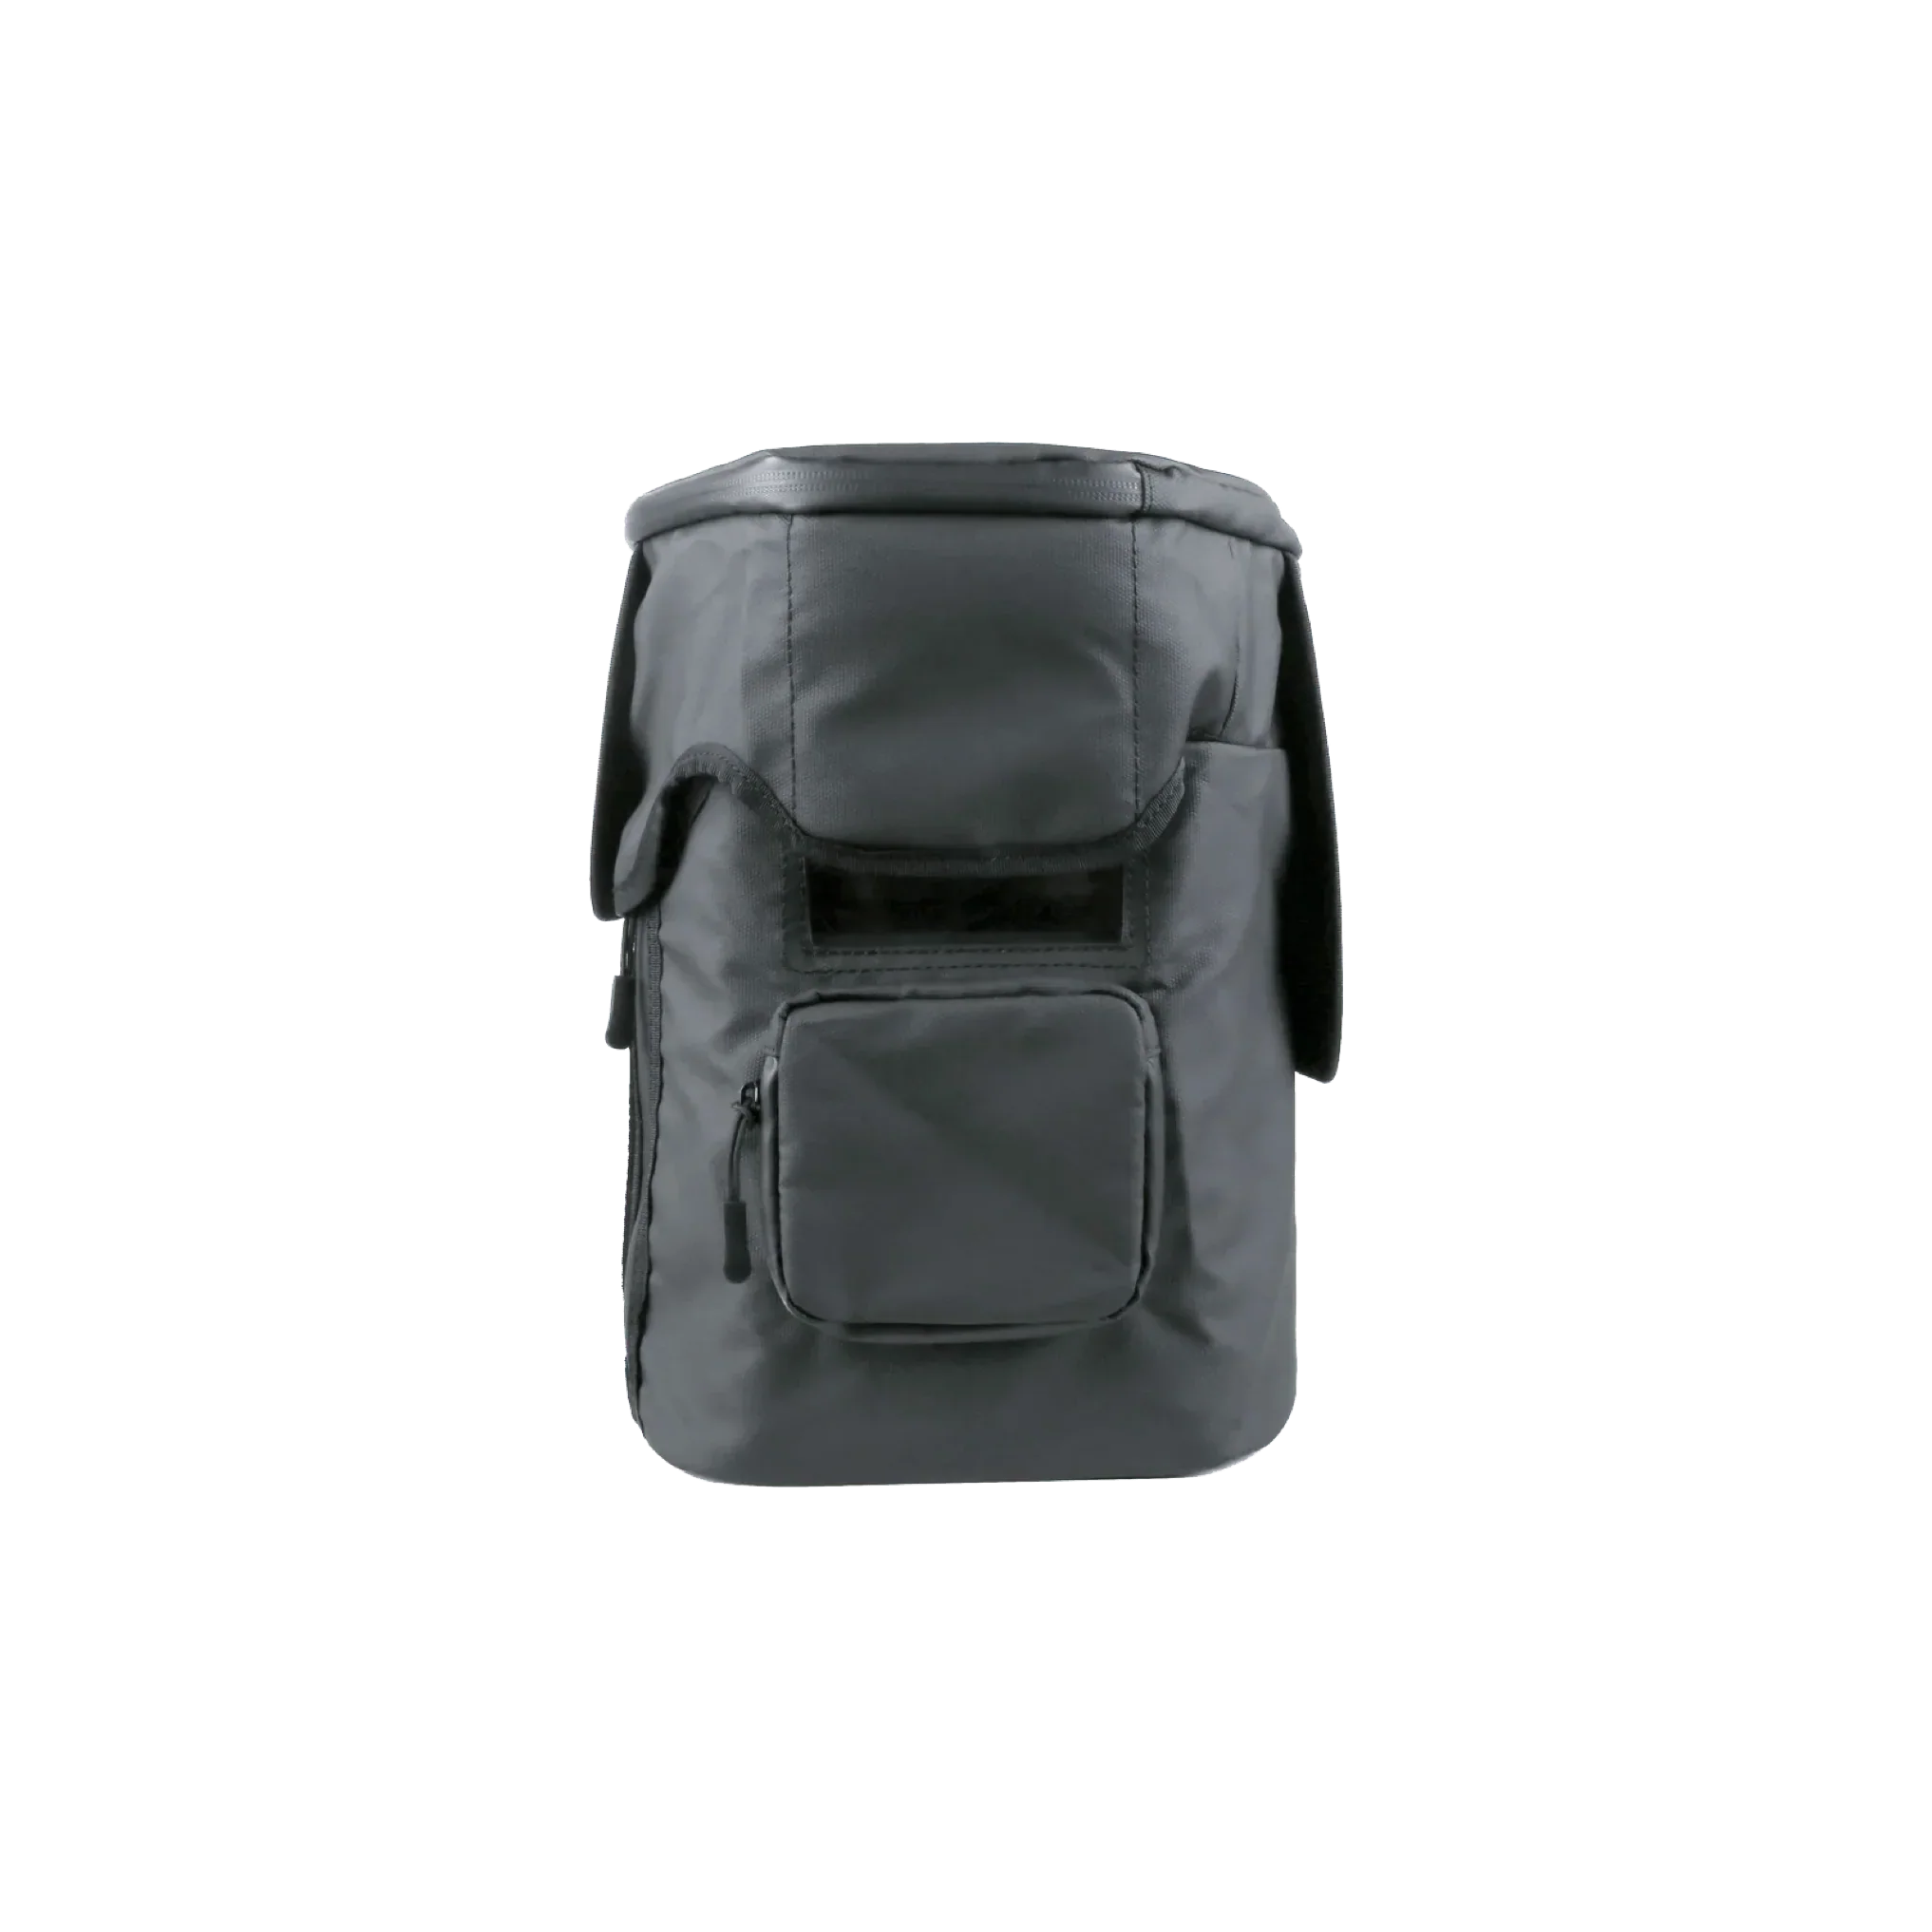 EcoFlow DELTA 2 Waterproof Bag - New Star Living